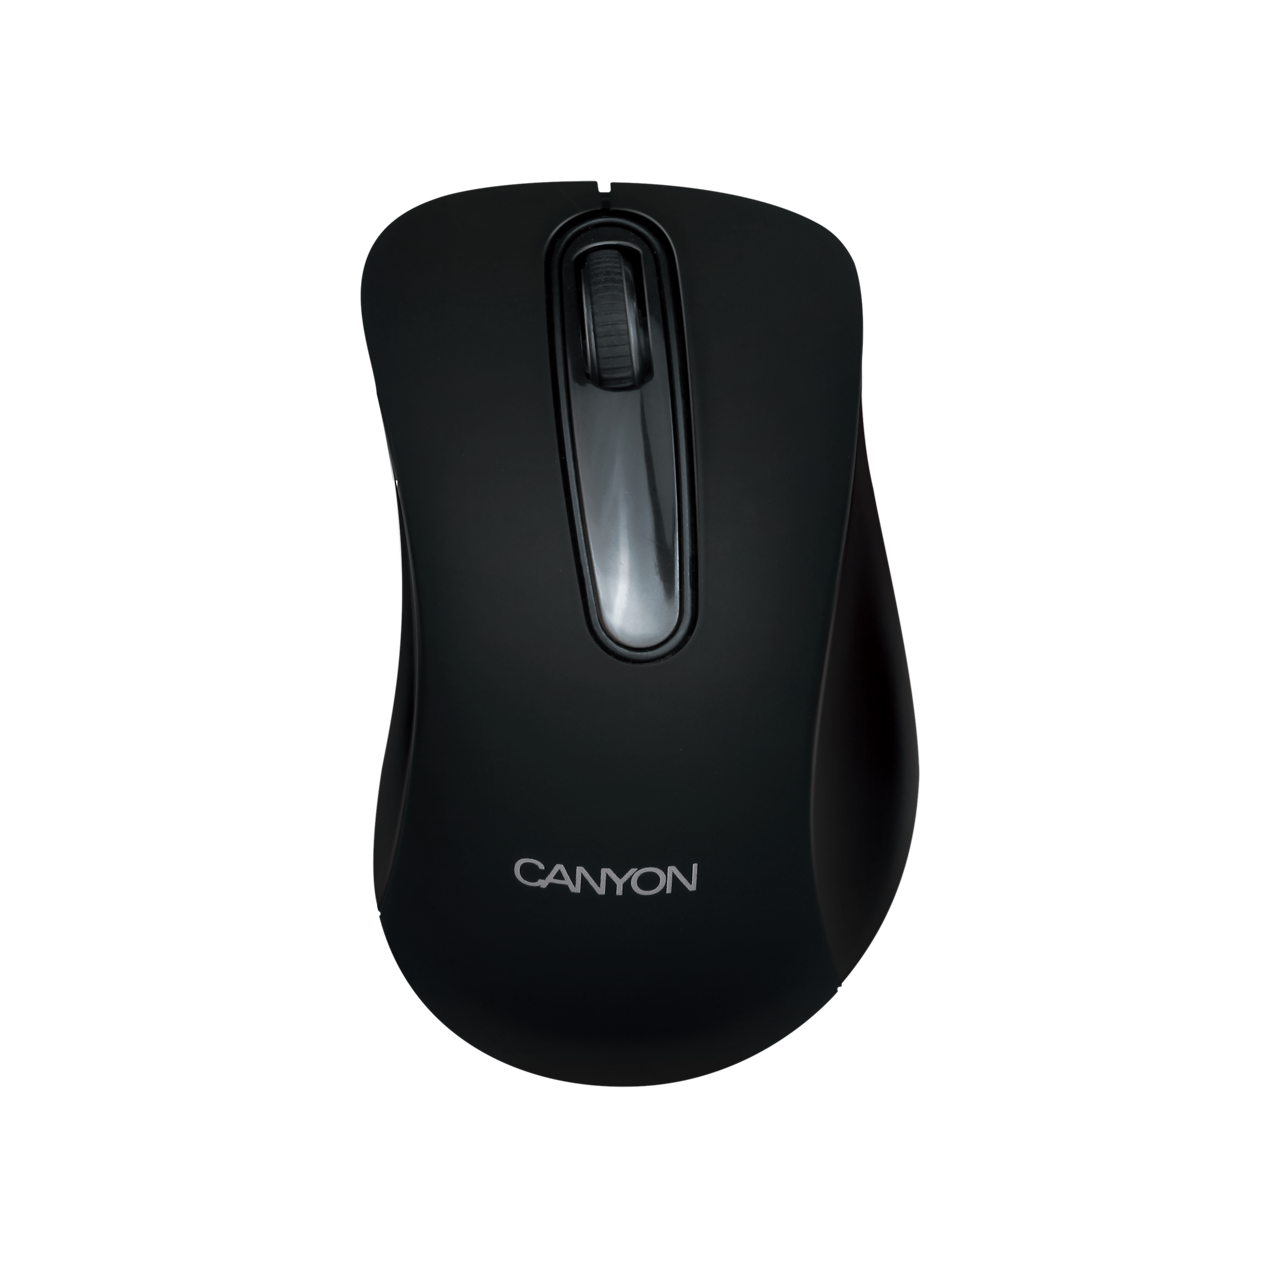 3-button optical mouse (CNE-CMSW2) - 1